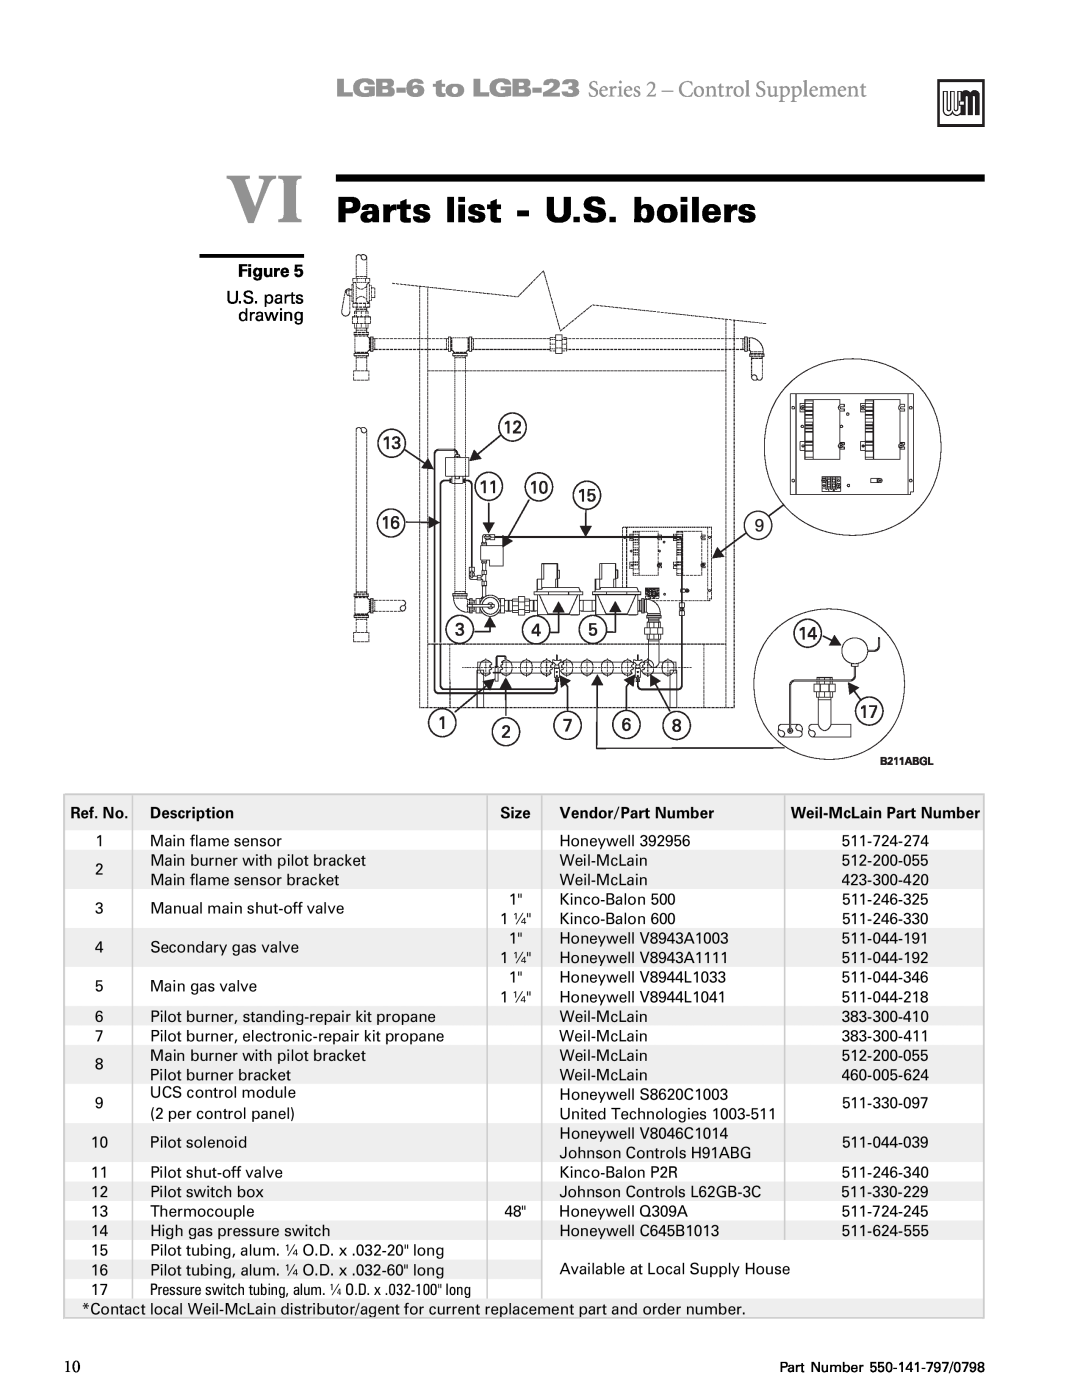 Weil-McLain LGB-16 VI Parts list - U.S. boilers, U.S. parts drawing, LGB-6to LGB-23 Series 2 - Control Supplement, x tD g 